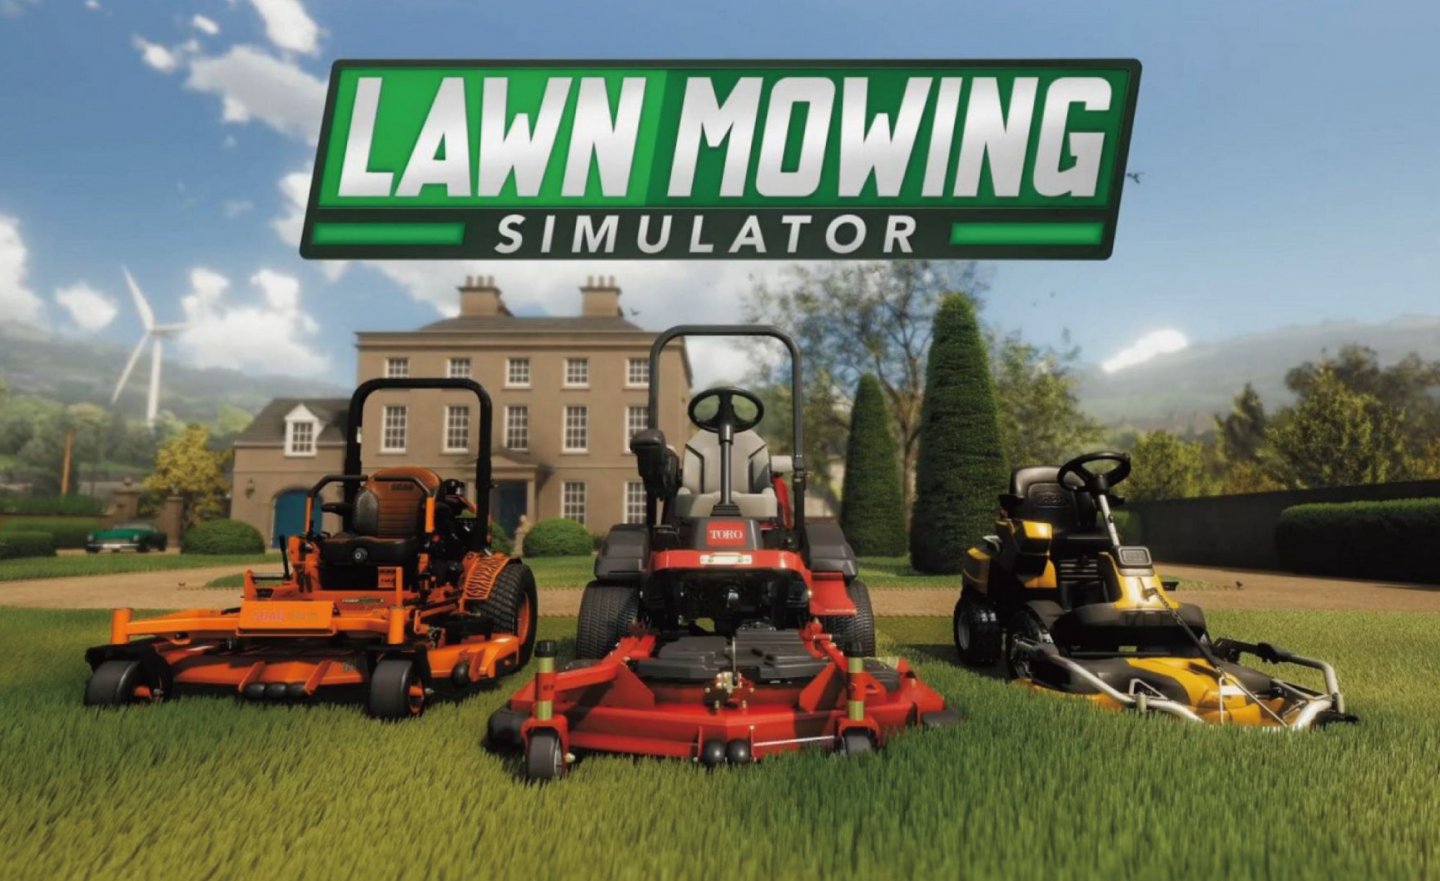 【限時免費】單人模擬遊戲《Lawn Mowing Simulator 草坪修剪模擬器》放送中，快搶在 2022 年 8 月 4 日 23:00 前領取v